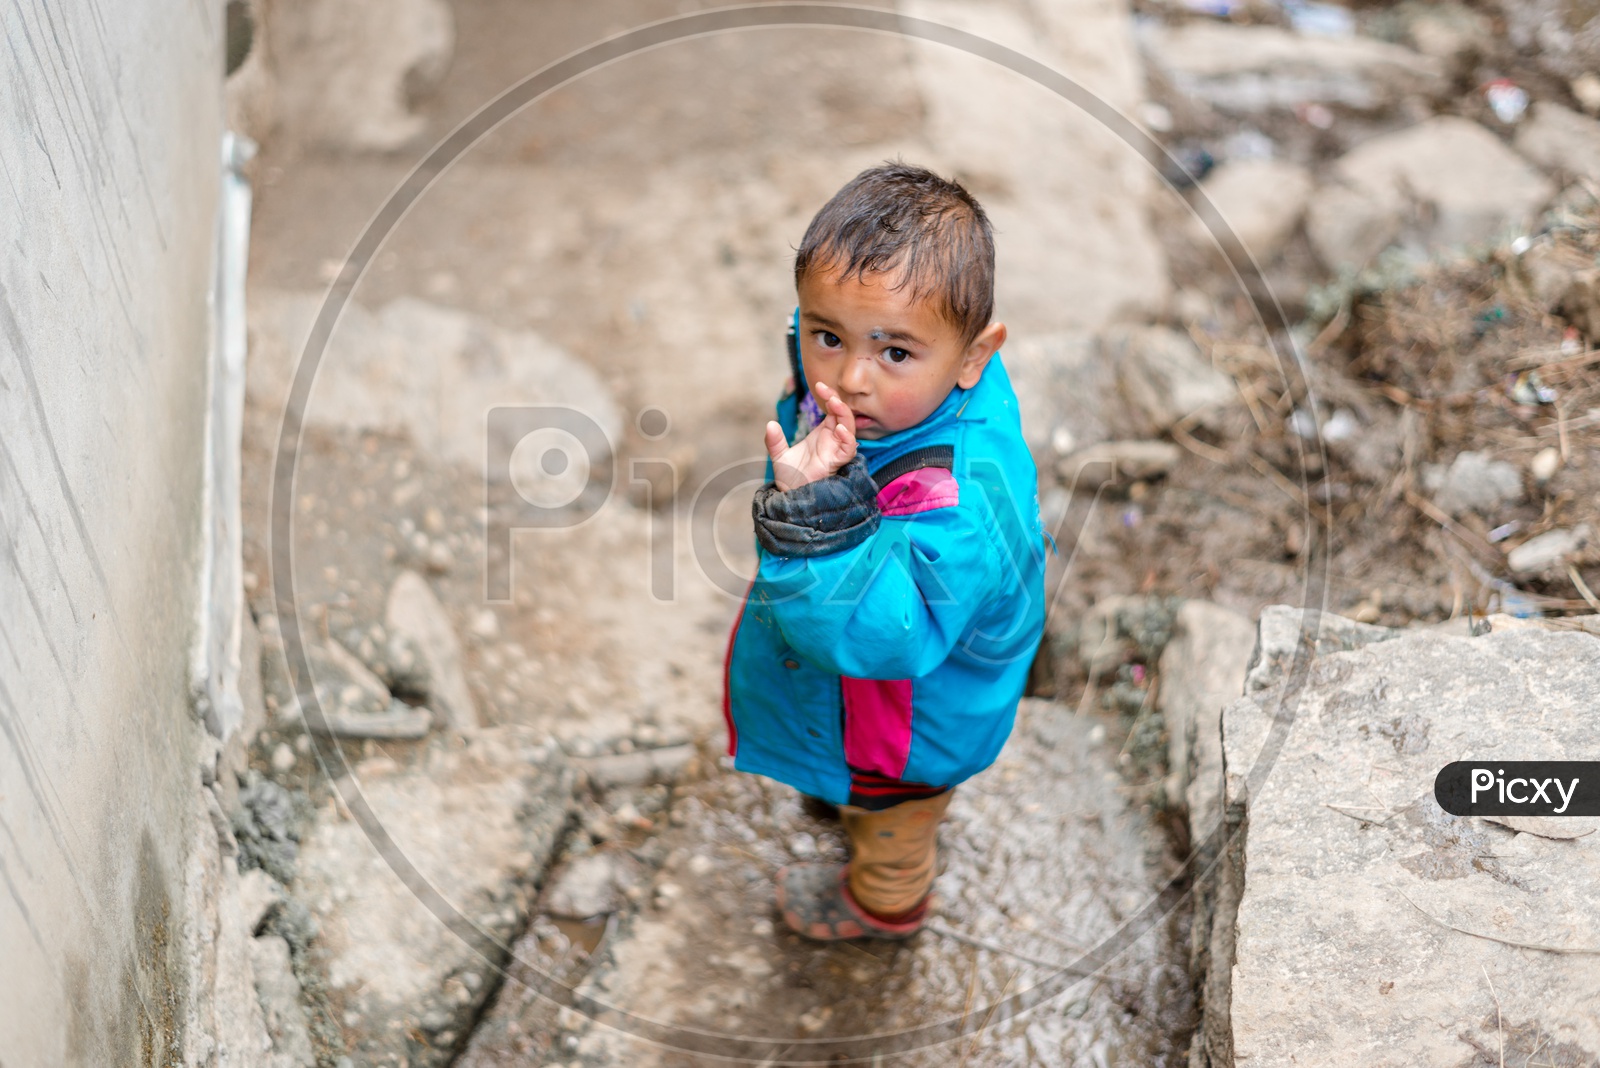 Portrait of Himachali Boy or Kid on the Street in Jerkin or Jacket